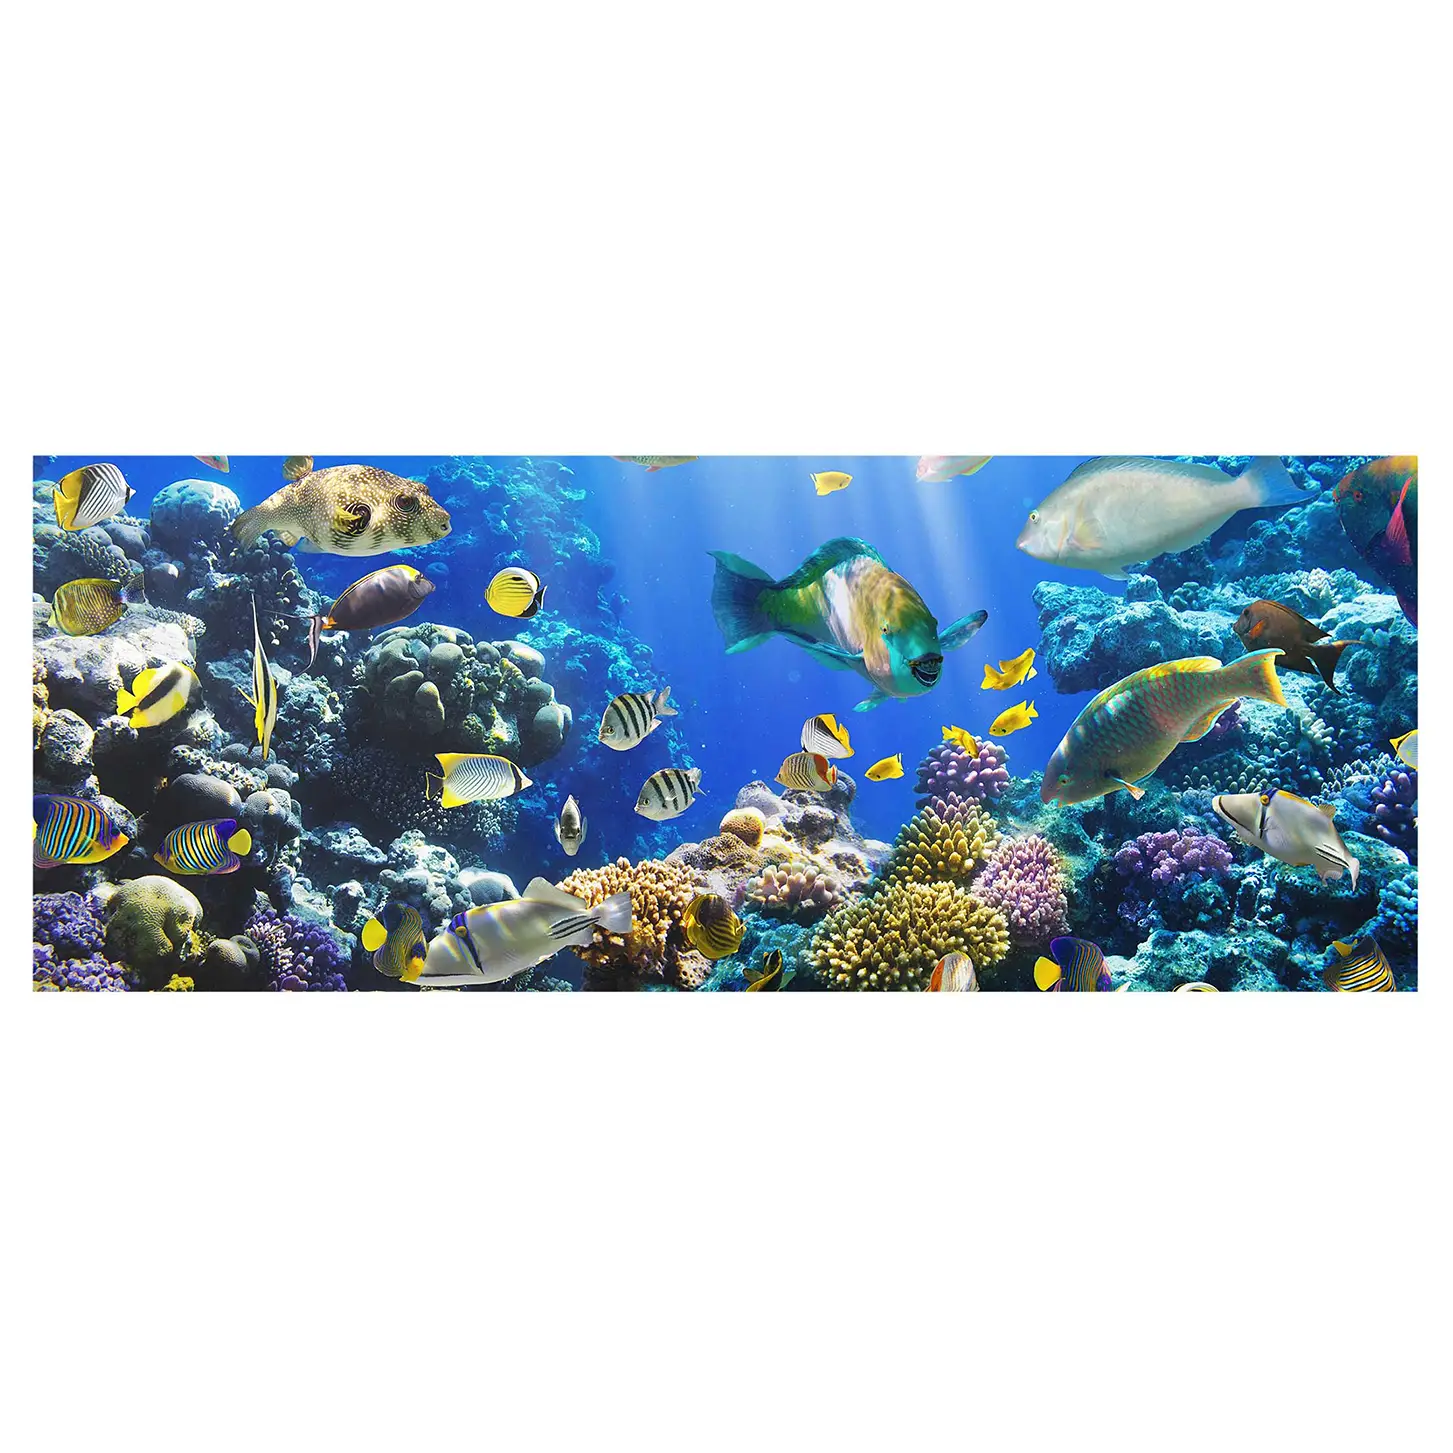 Underwater Reef Bild